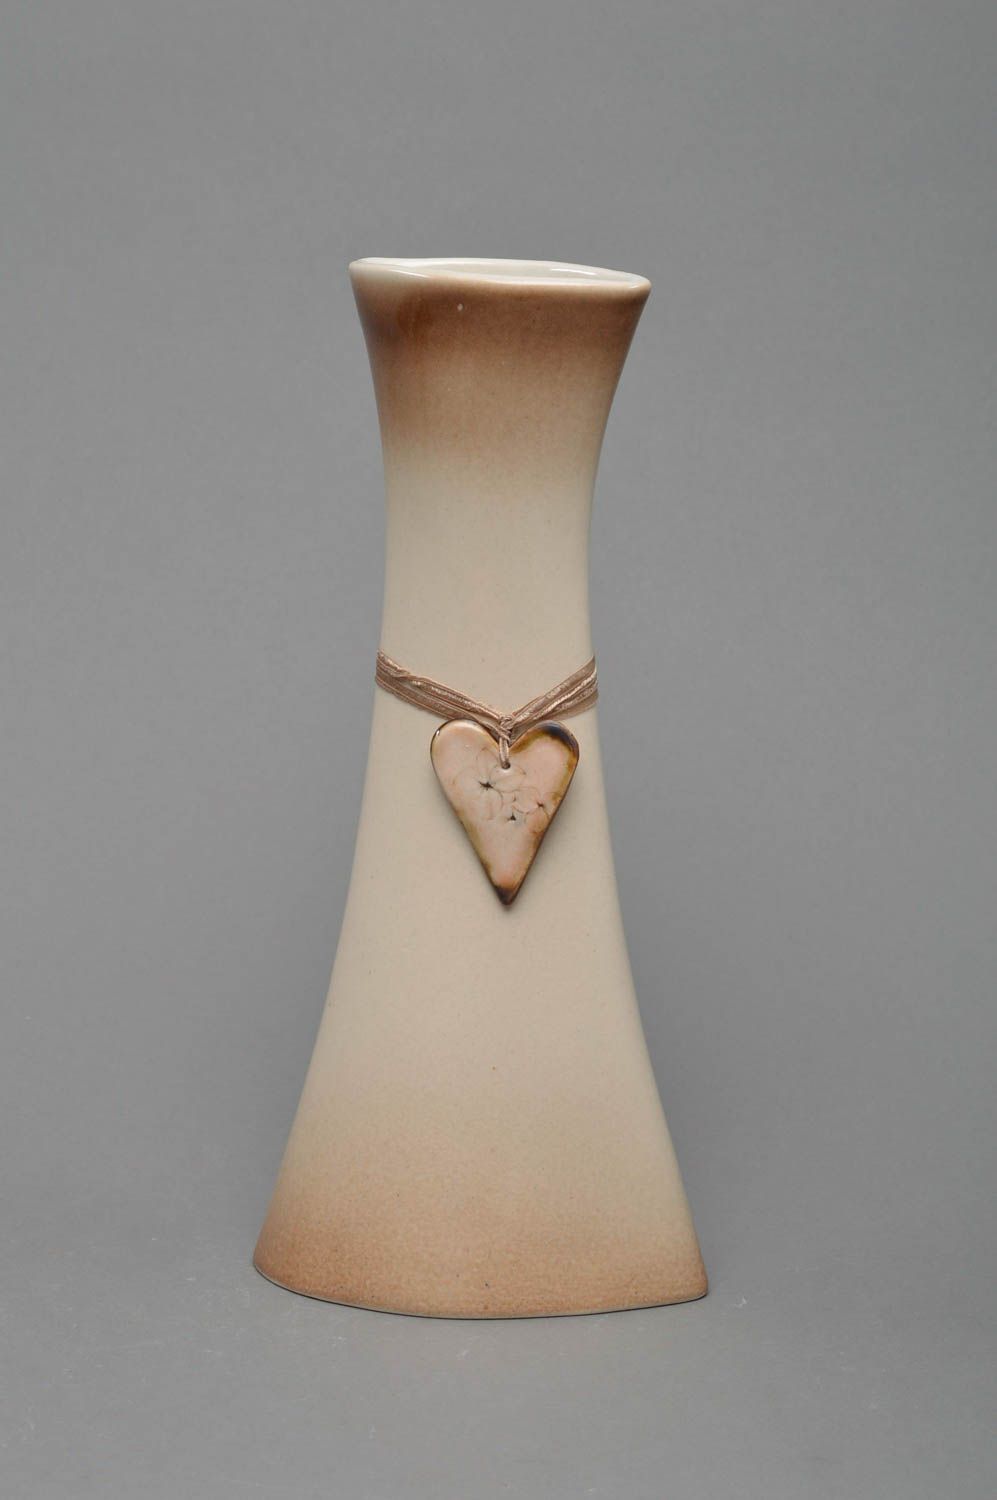 Beige schöne künstlerische Vase aus Porzellan ungewöhnlich originell Handarbeit foto 1